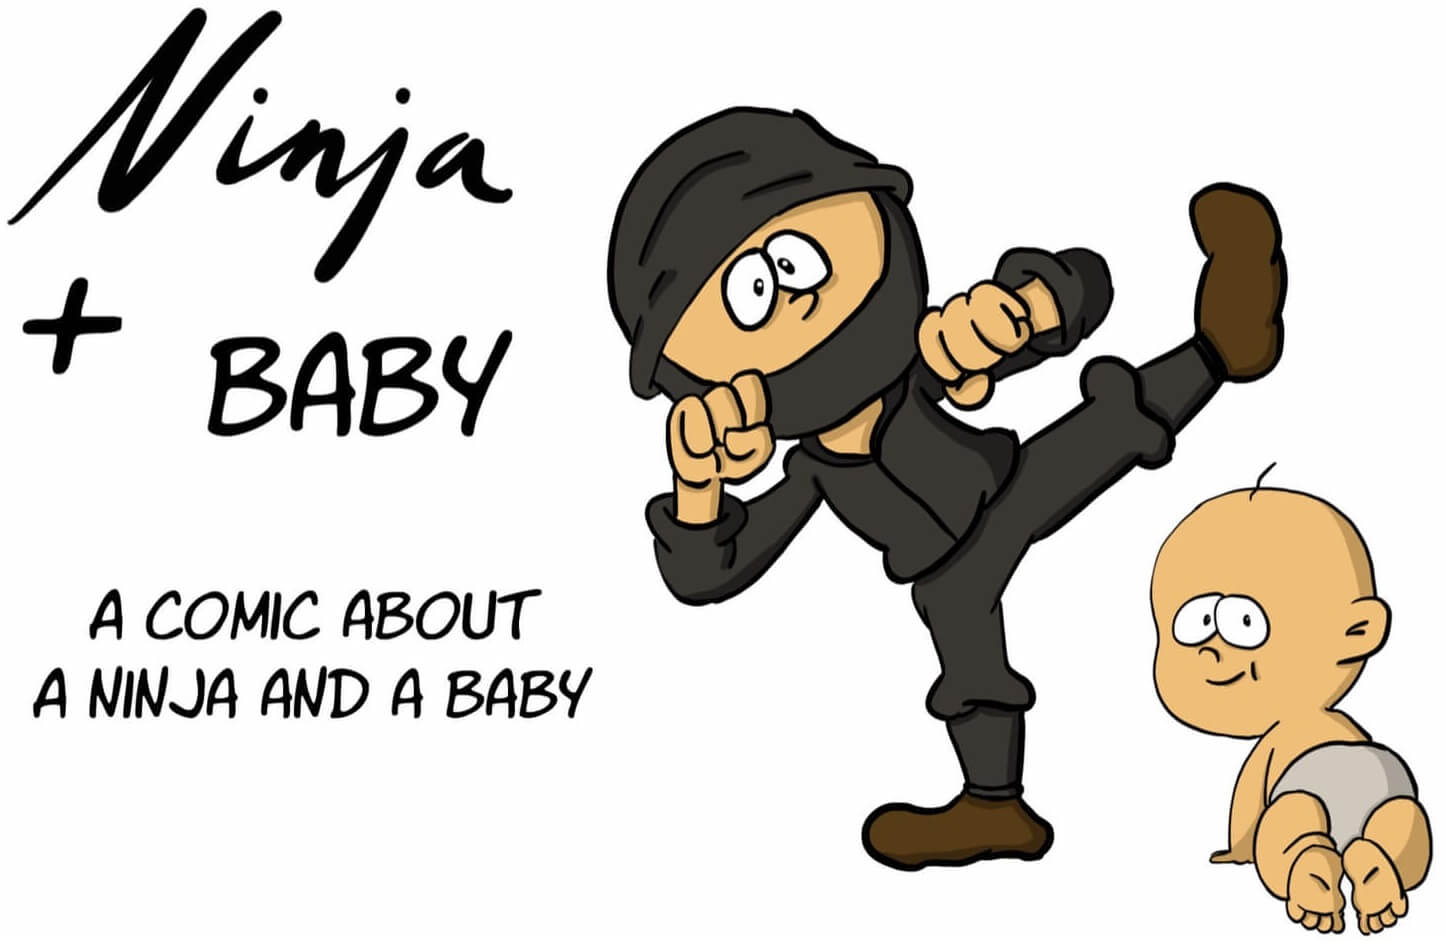 Ninja and Baby